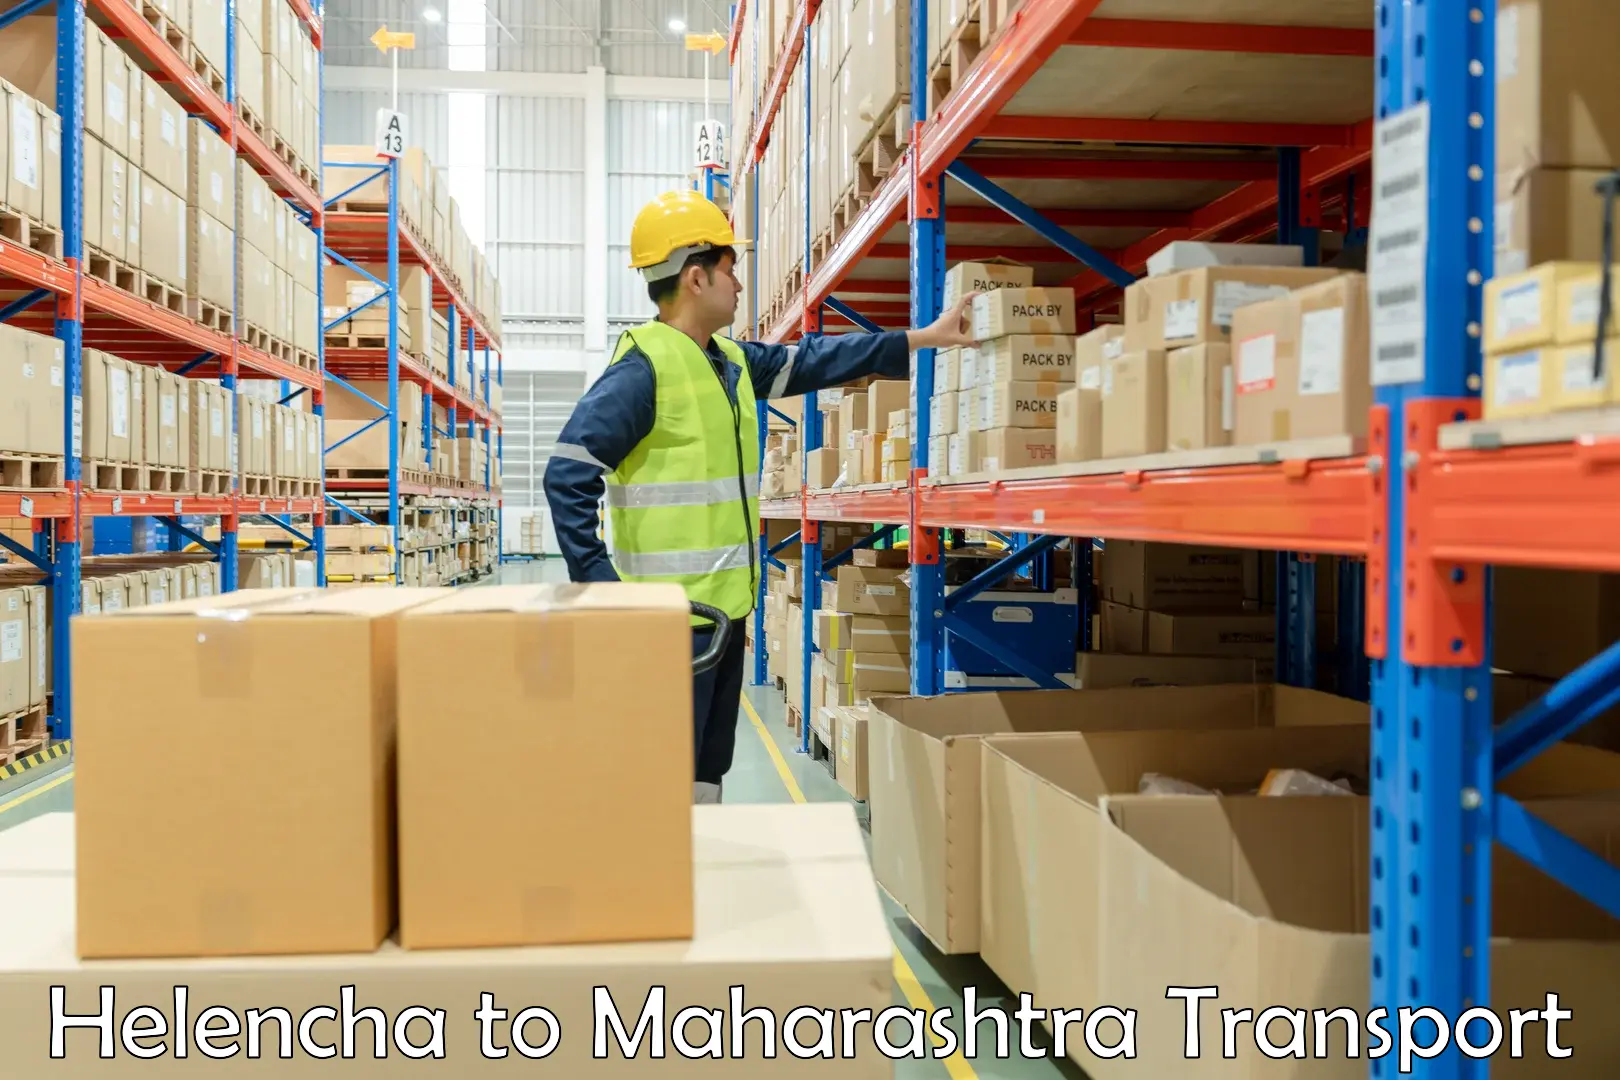 Daily transport service Helencha to Mumbai Port